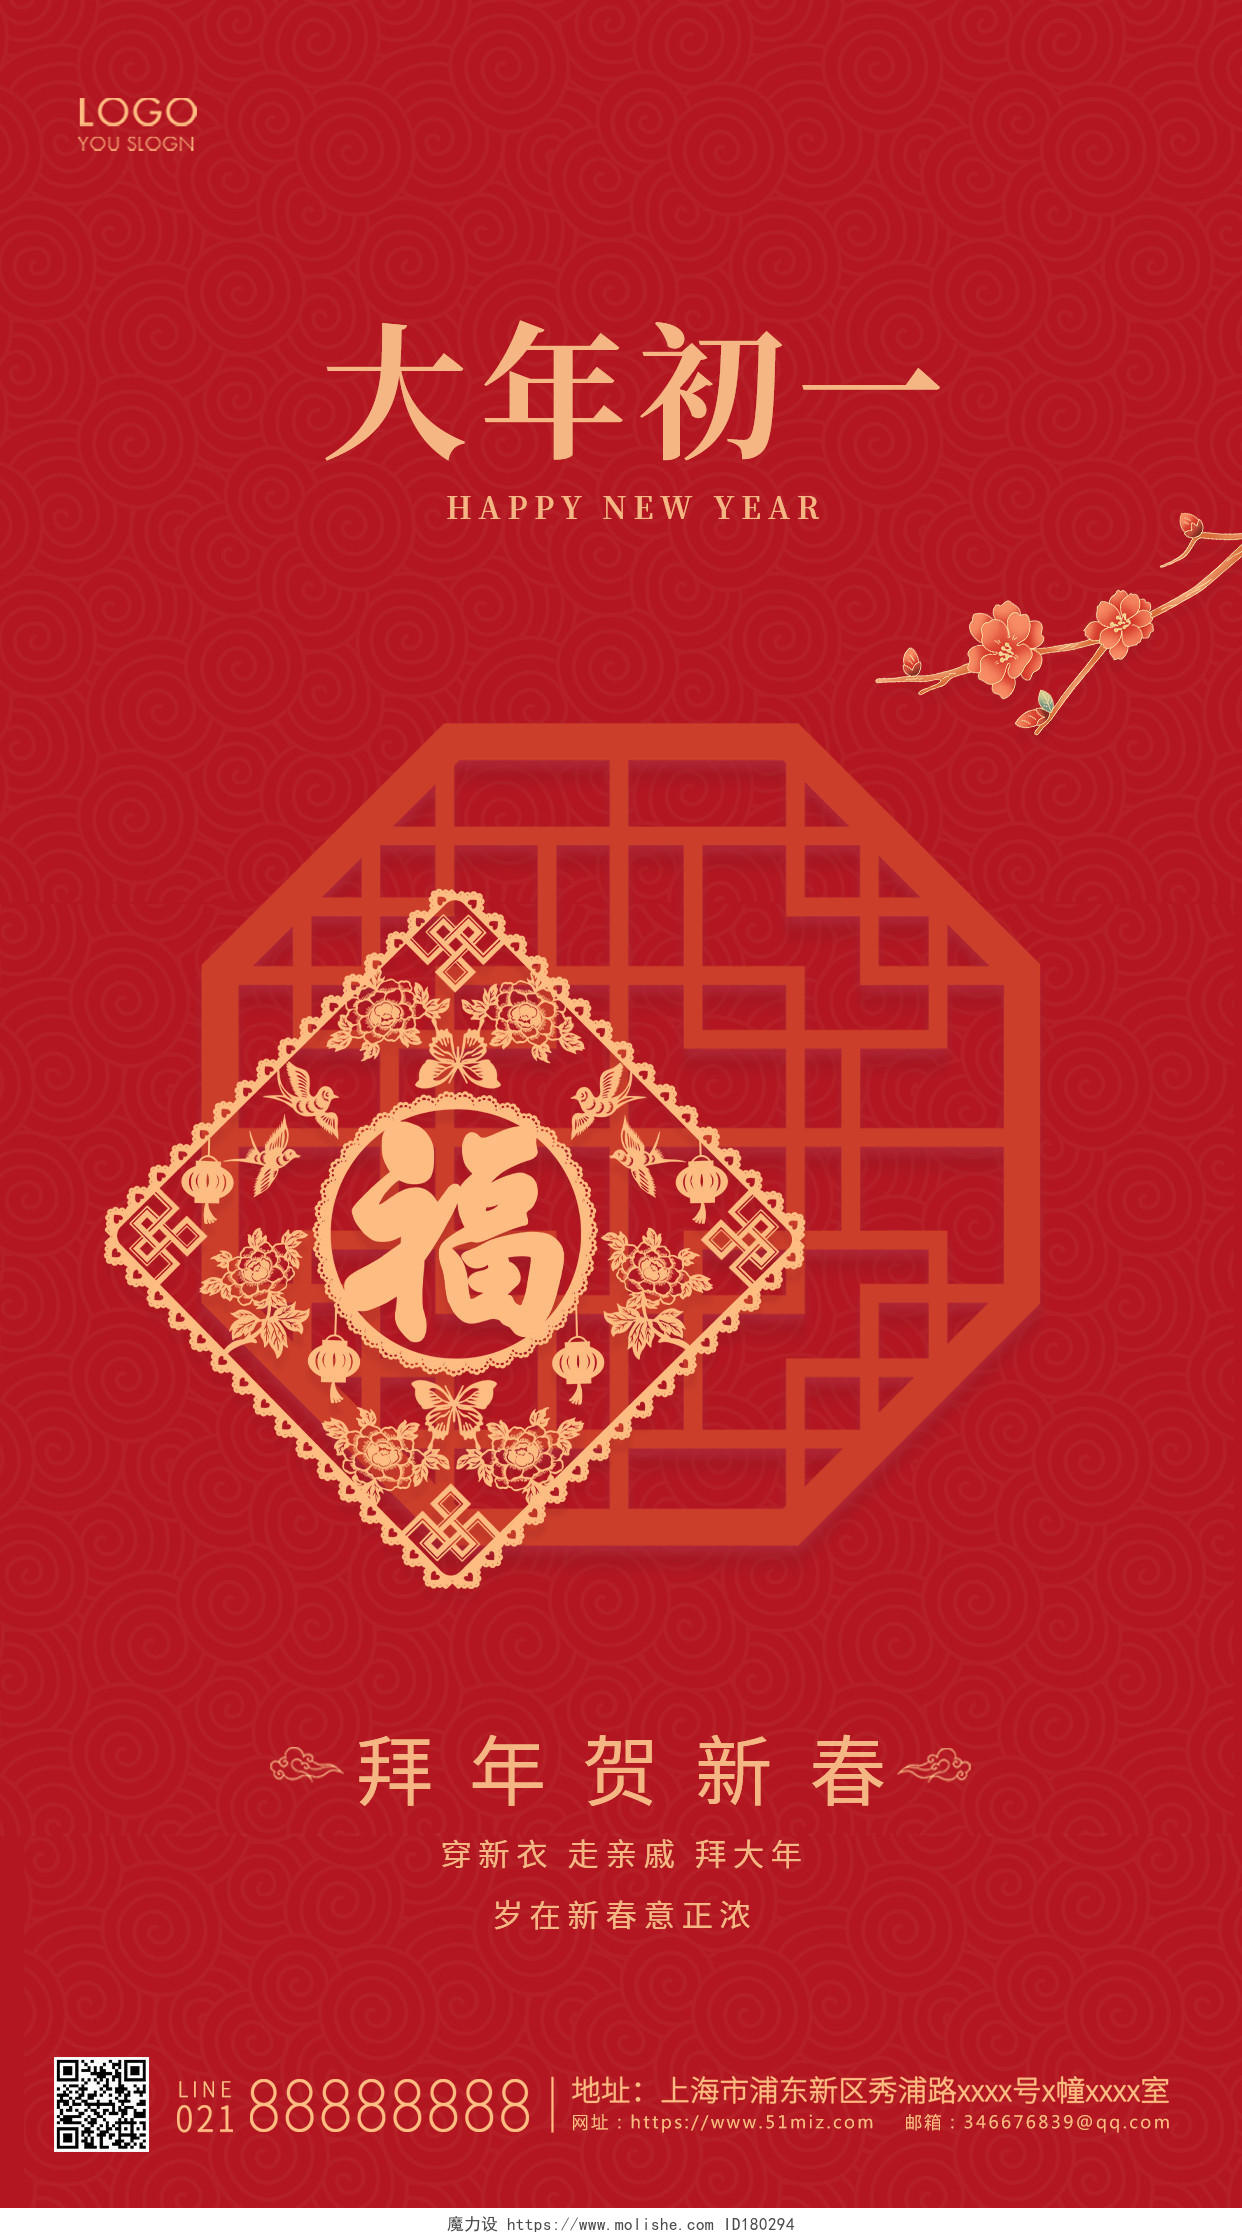 红色简约风格大年初一ui手机海报设计春节